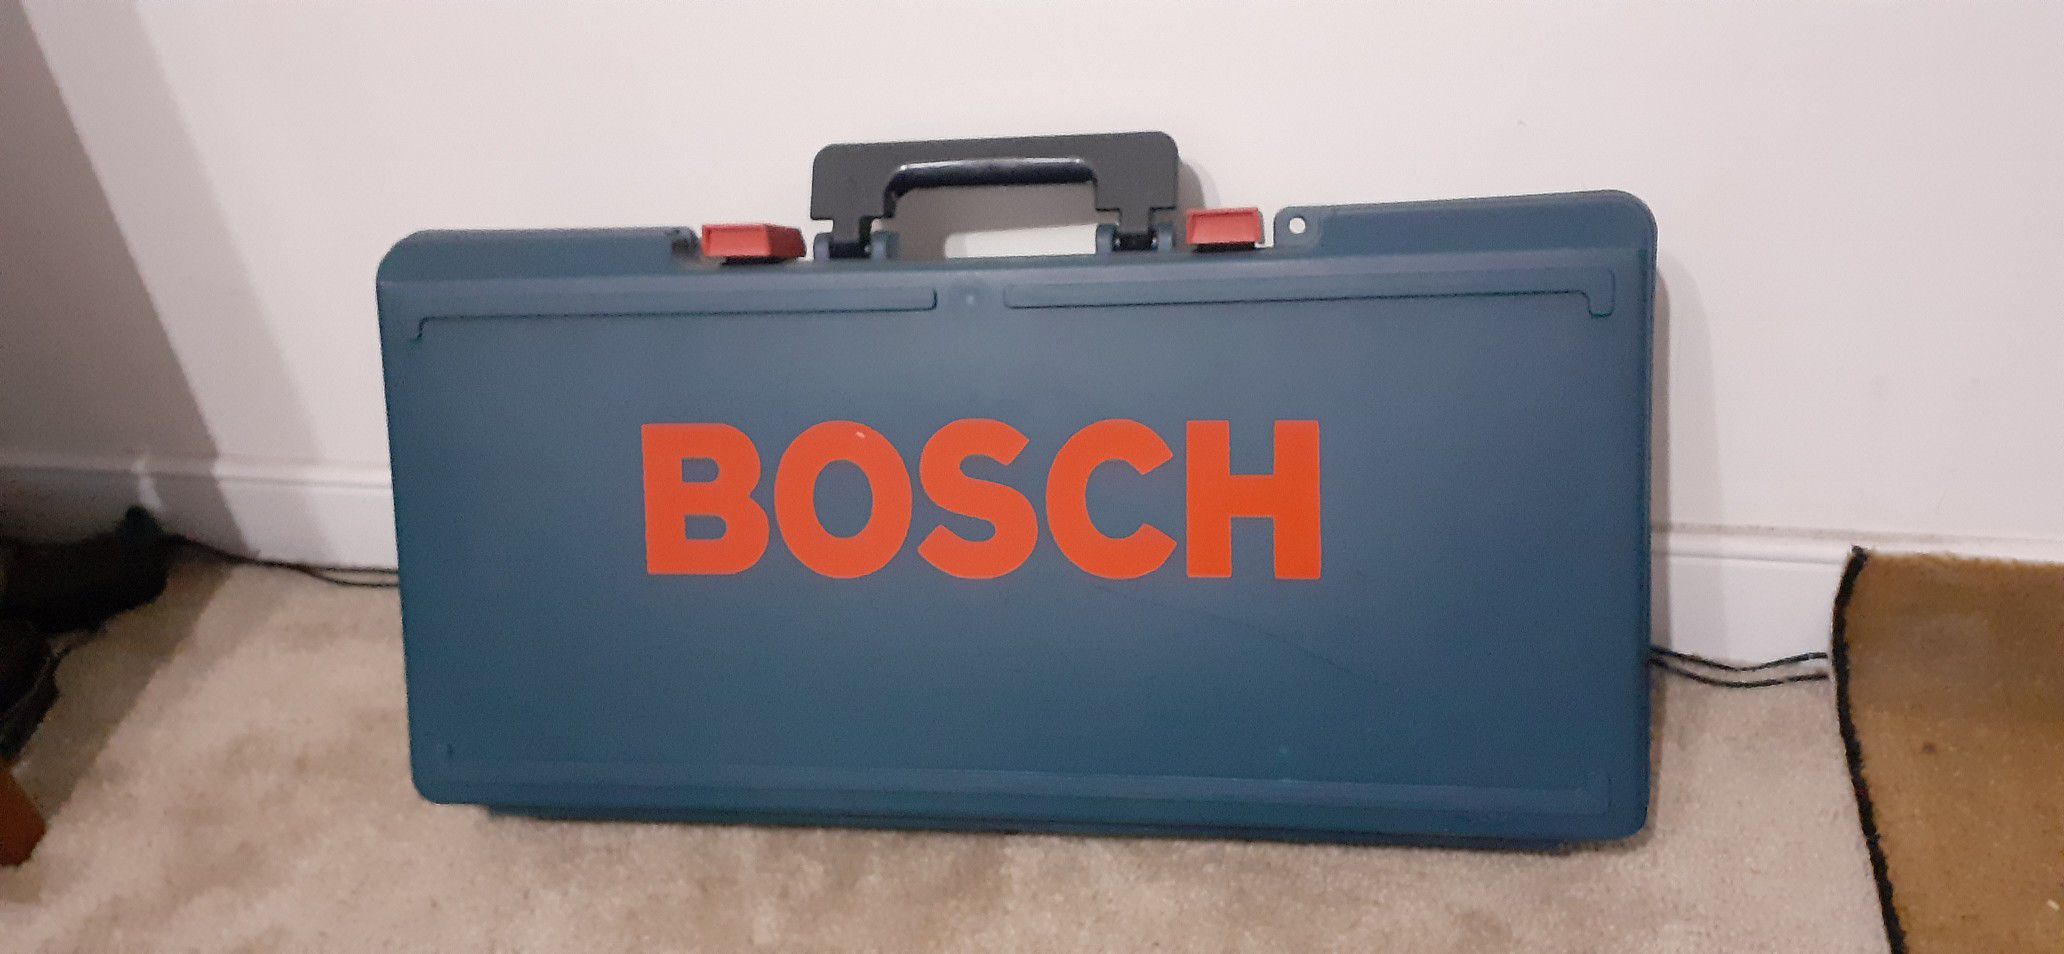 Bosch new hammer drill